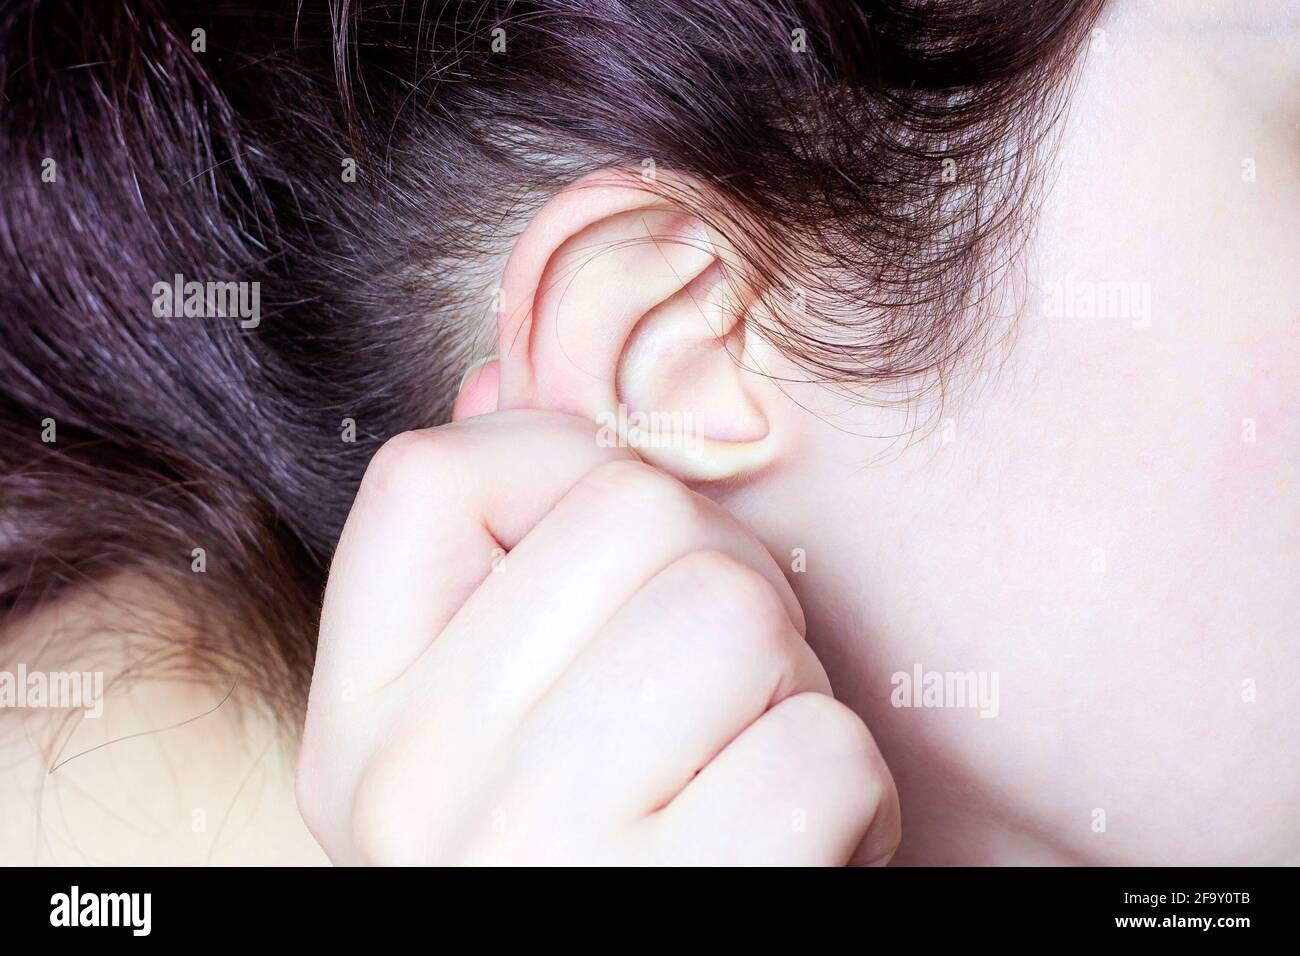 Dettaglio della testa con l'esame medico dell'orecchio umano e dei capelli da vicino. Foto Stock